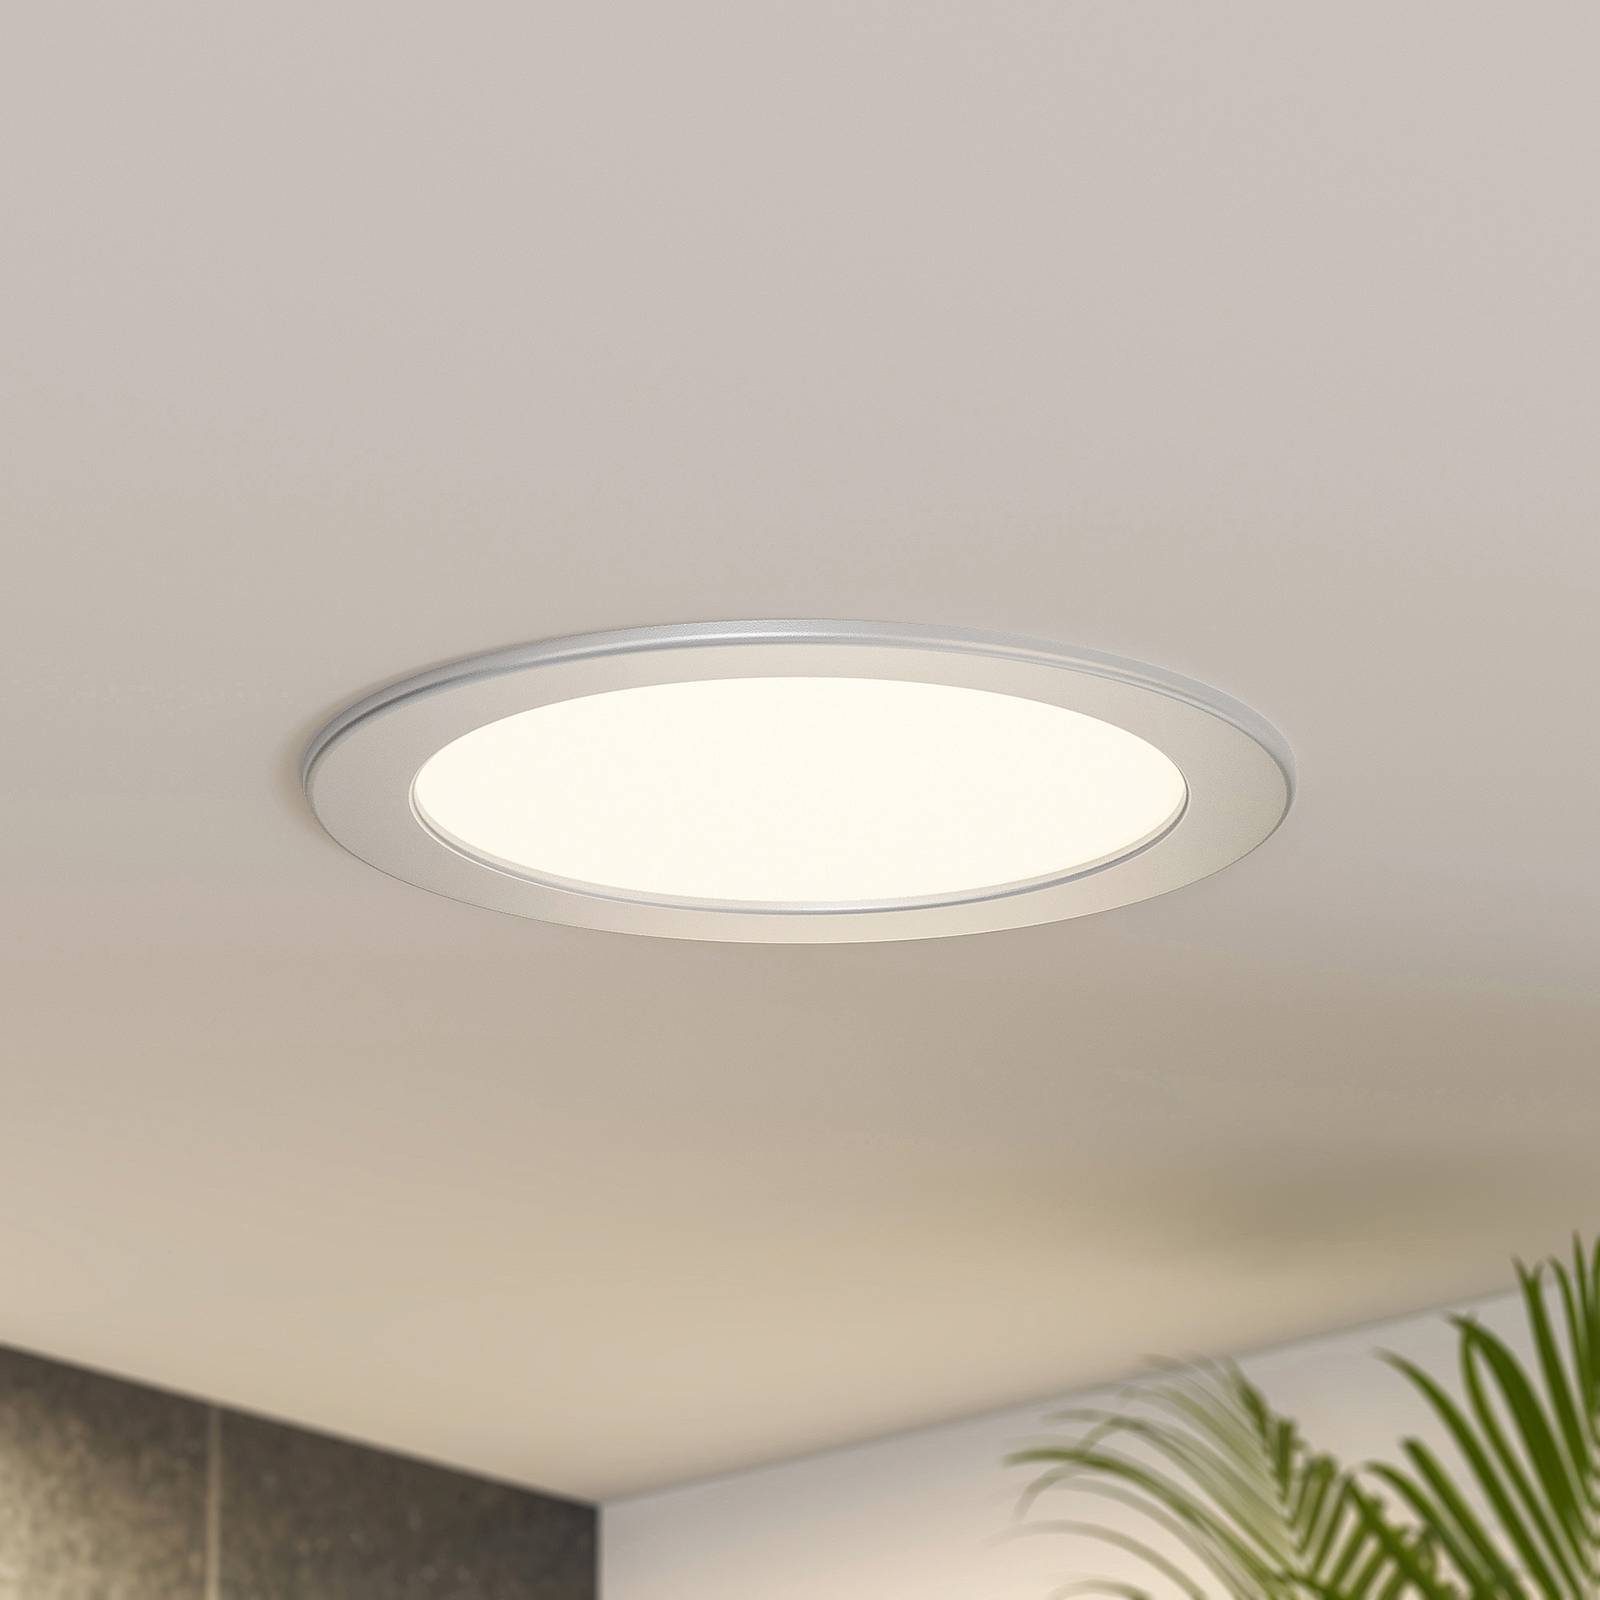 Prios LED vstavané svietidlo Cadance, strieborné, 22 cm, 3 jednotky,